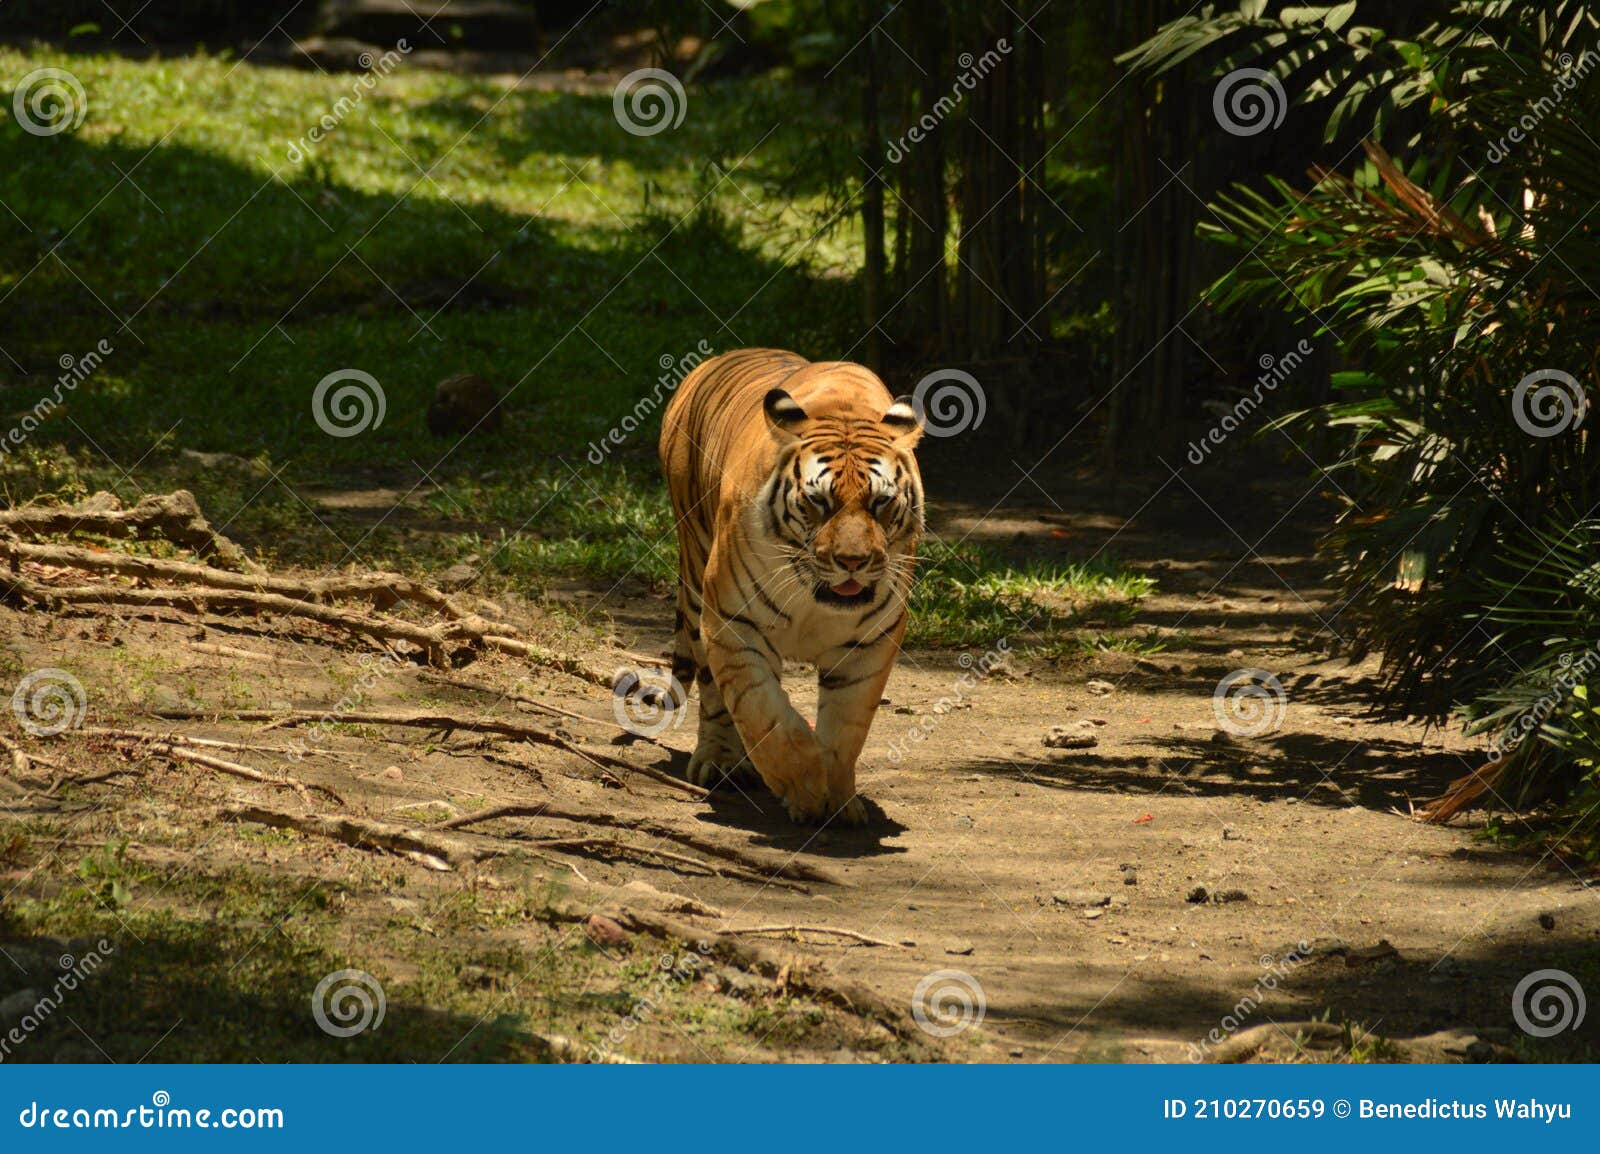 sumatera tiger at surabaya east java zoo